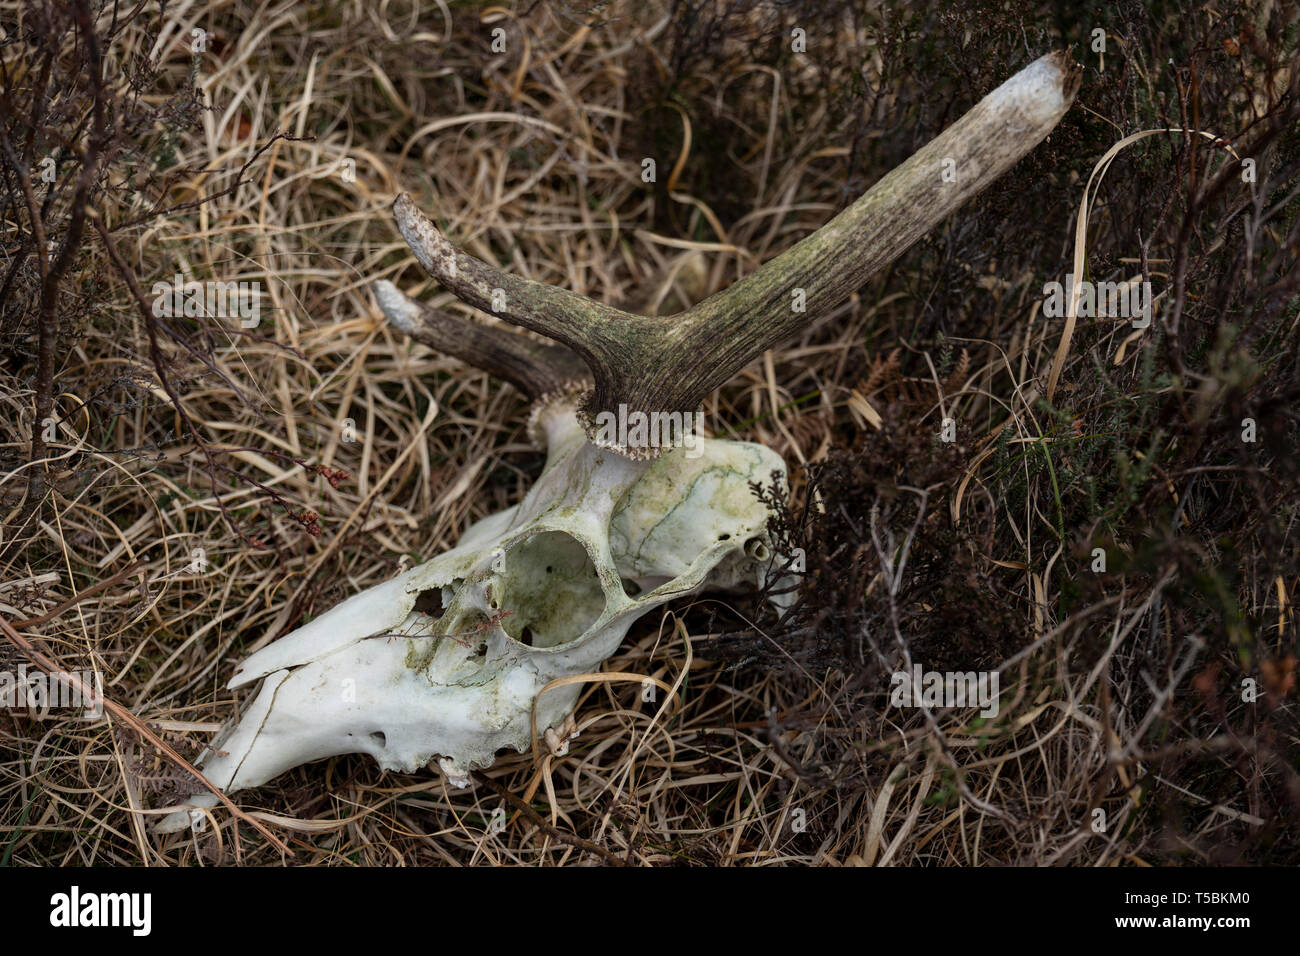 Rotwild Schädel in die schottische Landschaft in der Nähe von Poolewe. Stockfoto